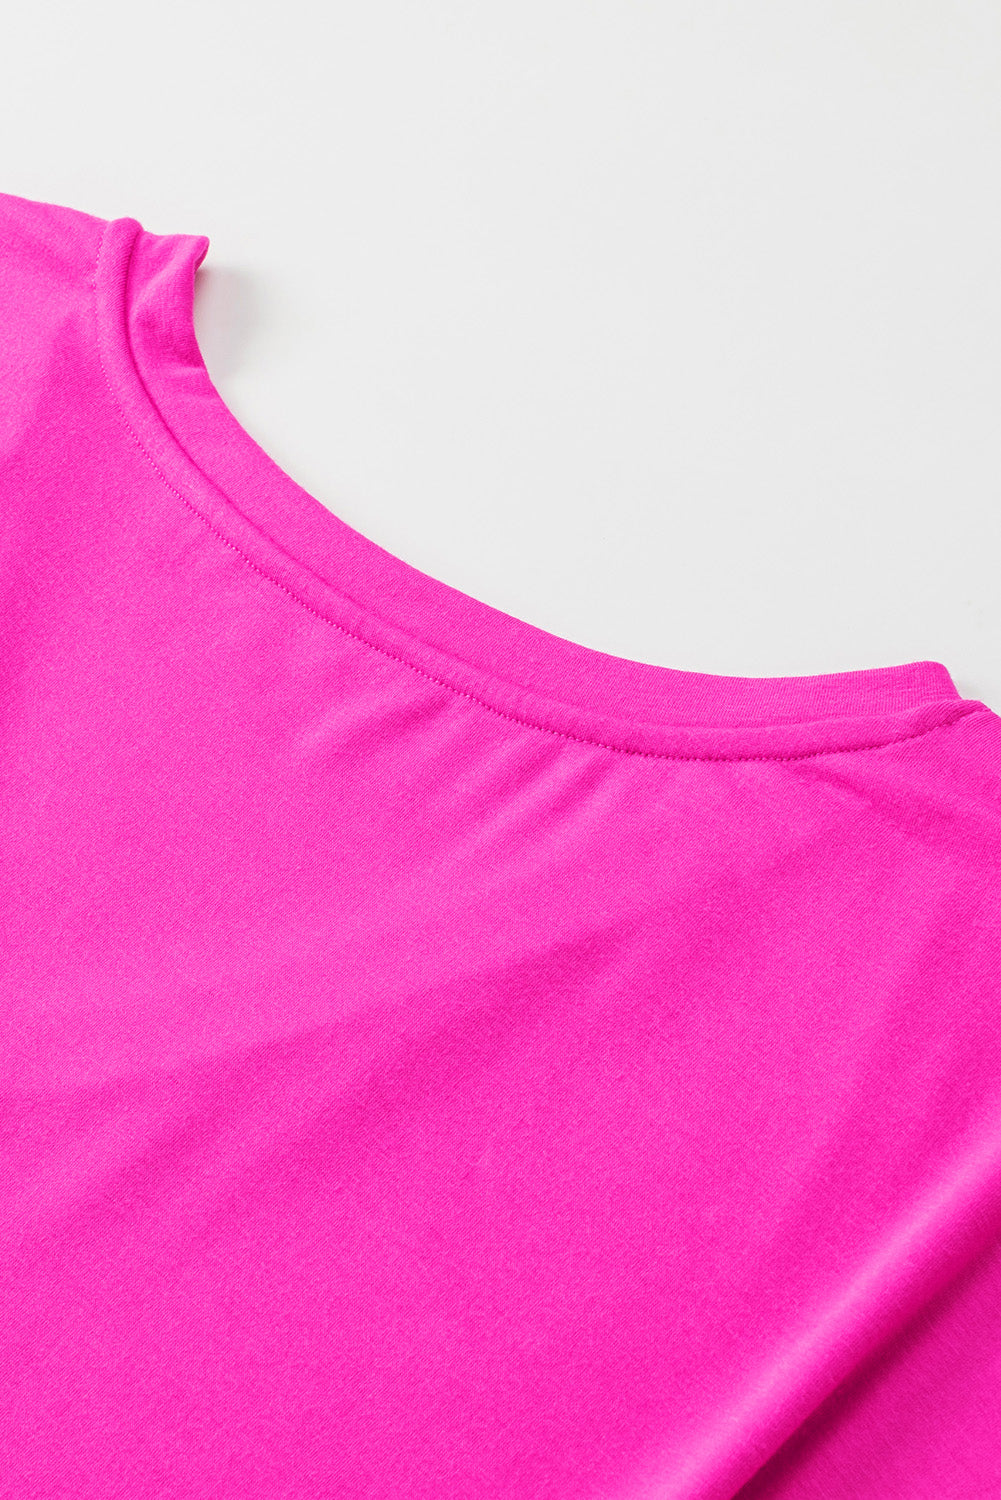 T-shirt ampia con scollo a V con stampa lampo rosa brillante